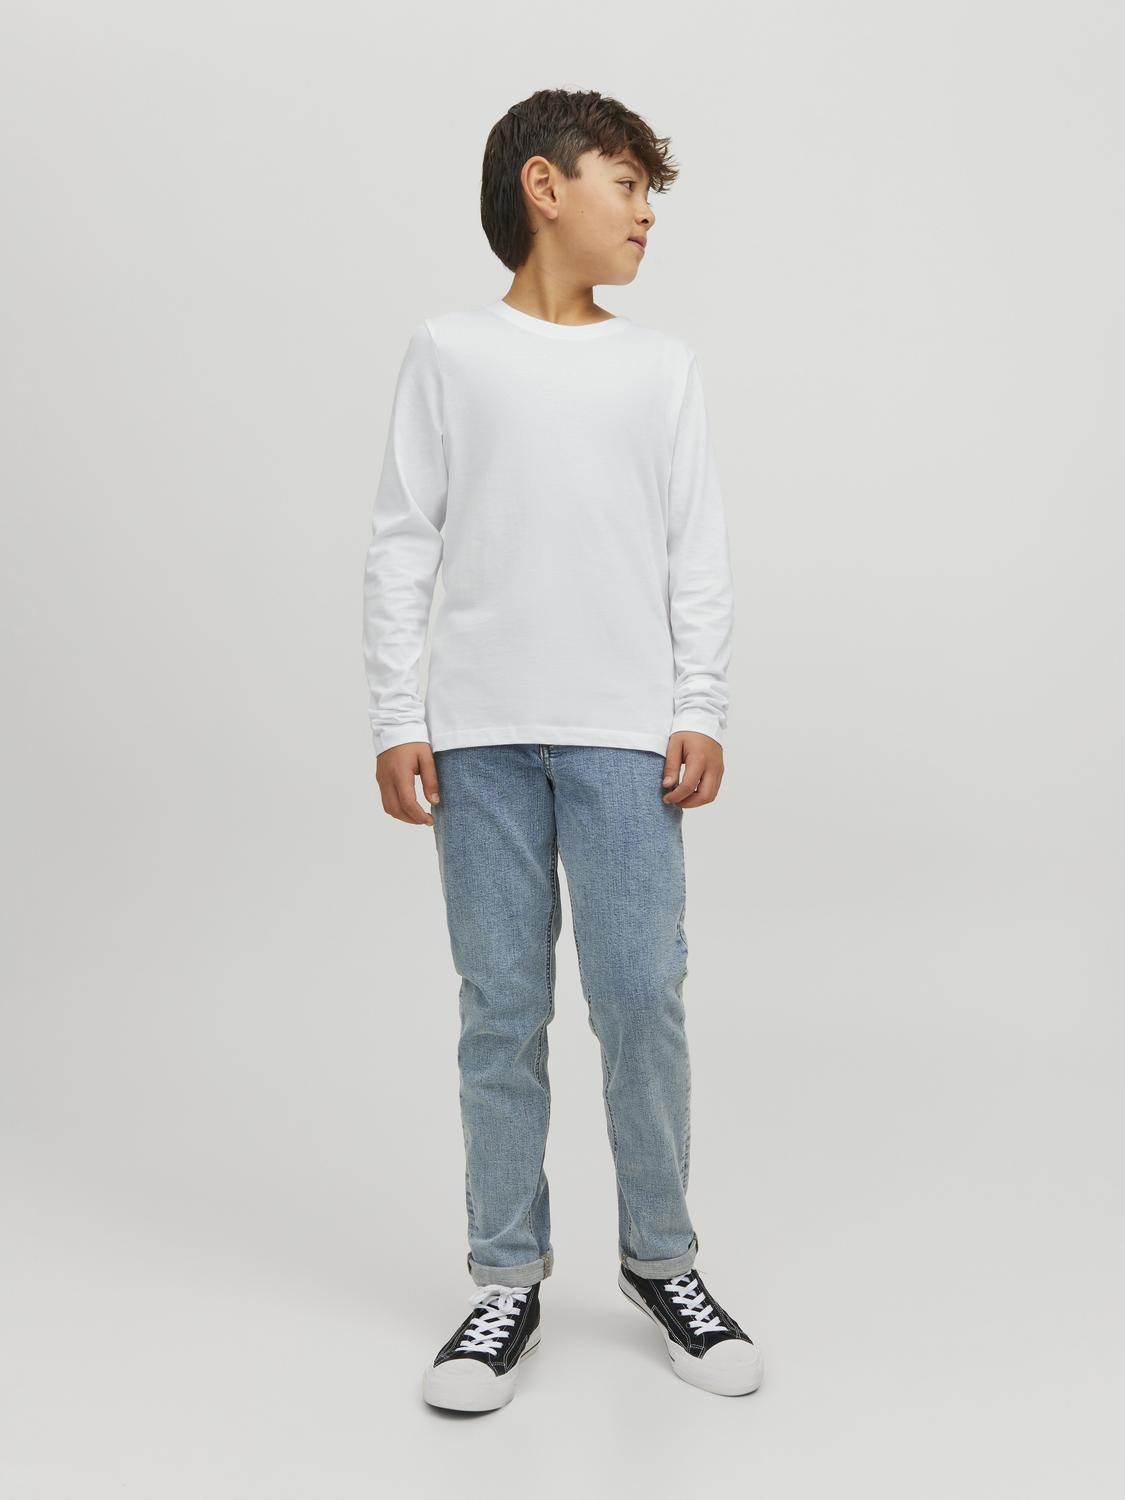 Jack & Jones Plain T-shirt Mini -White - 12257381